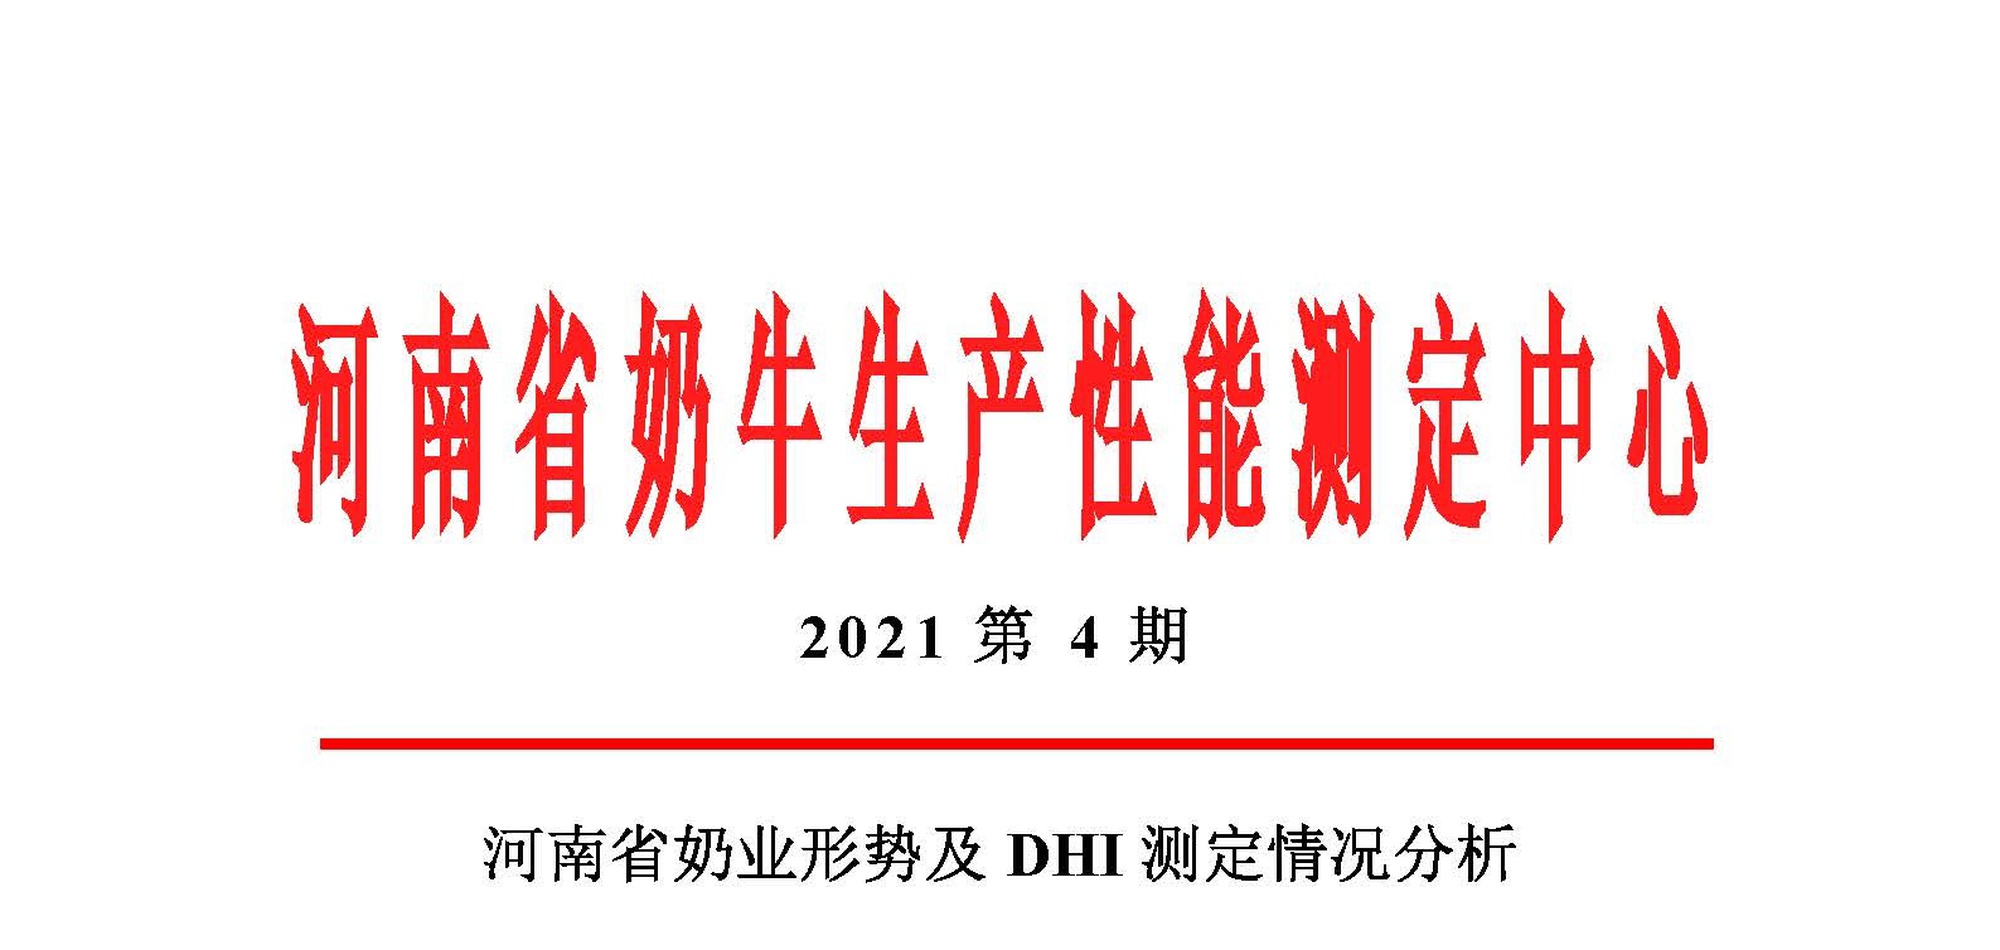 河南省奶业形势及DHI测定情况分析（2021年第4季度报告）